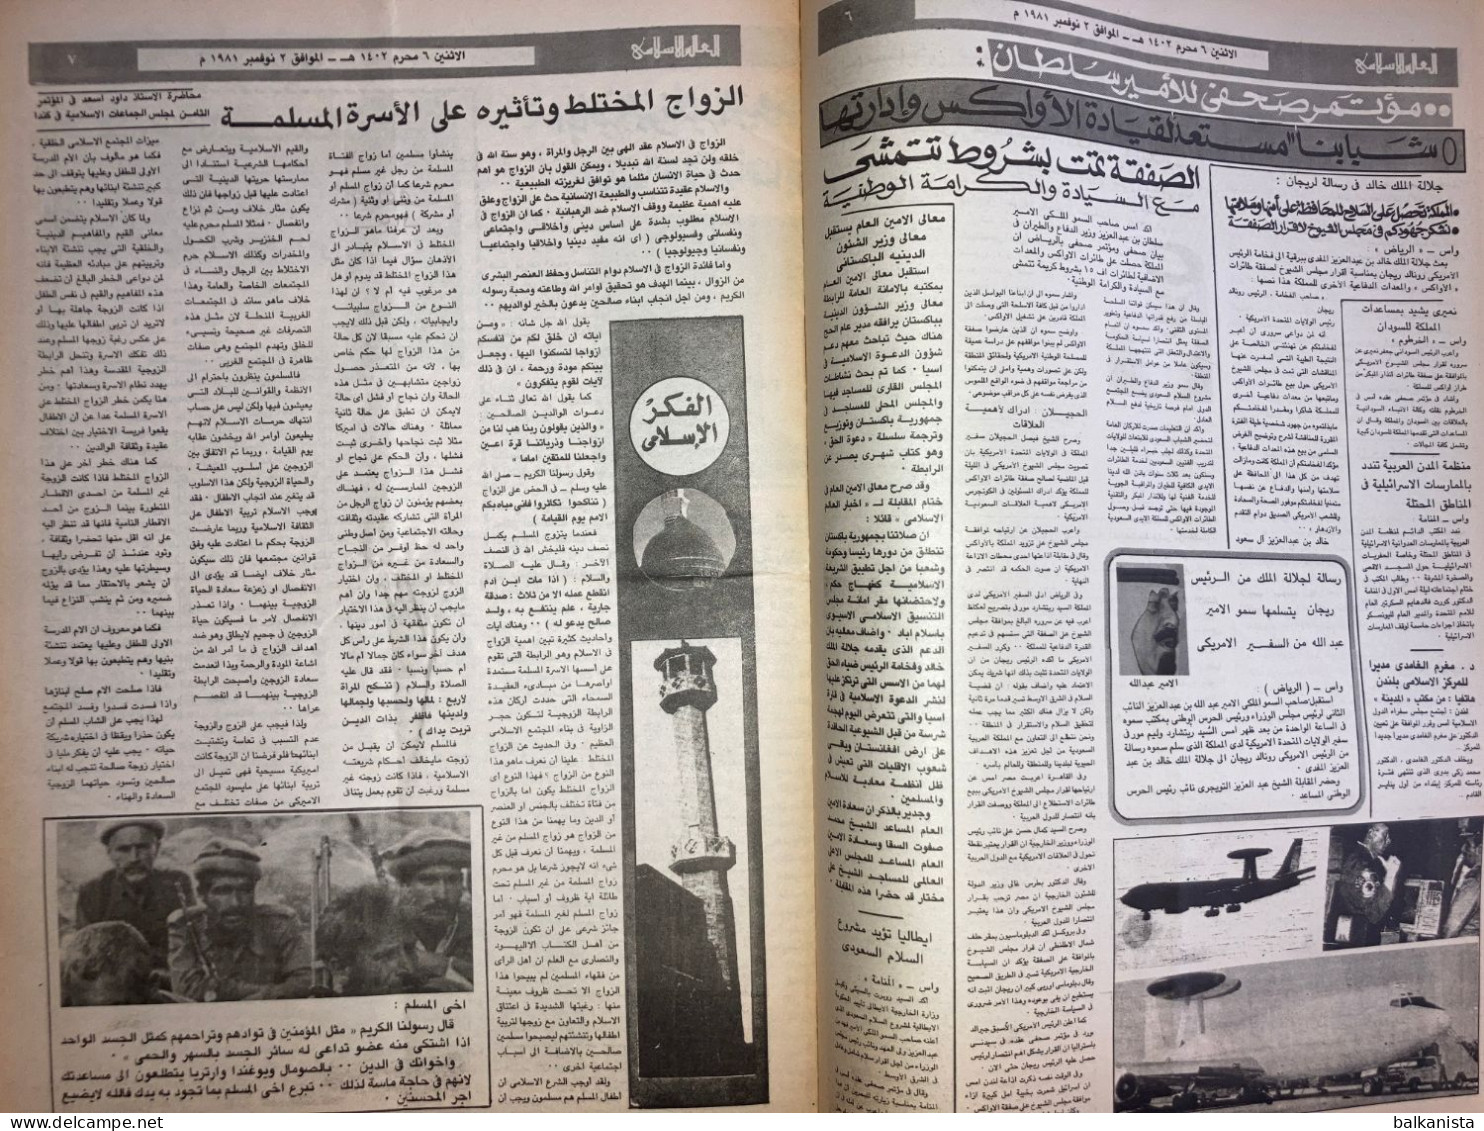 Saudi Arabia Akhbar Al-Alam Al-Islami Newspaper 2 November 1981 - Autres & Non Classés